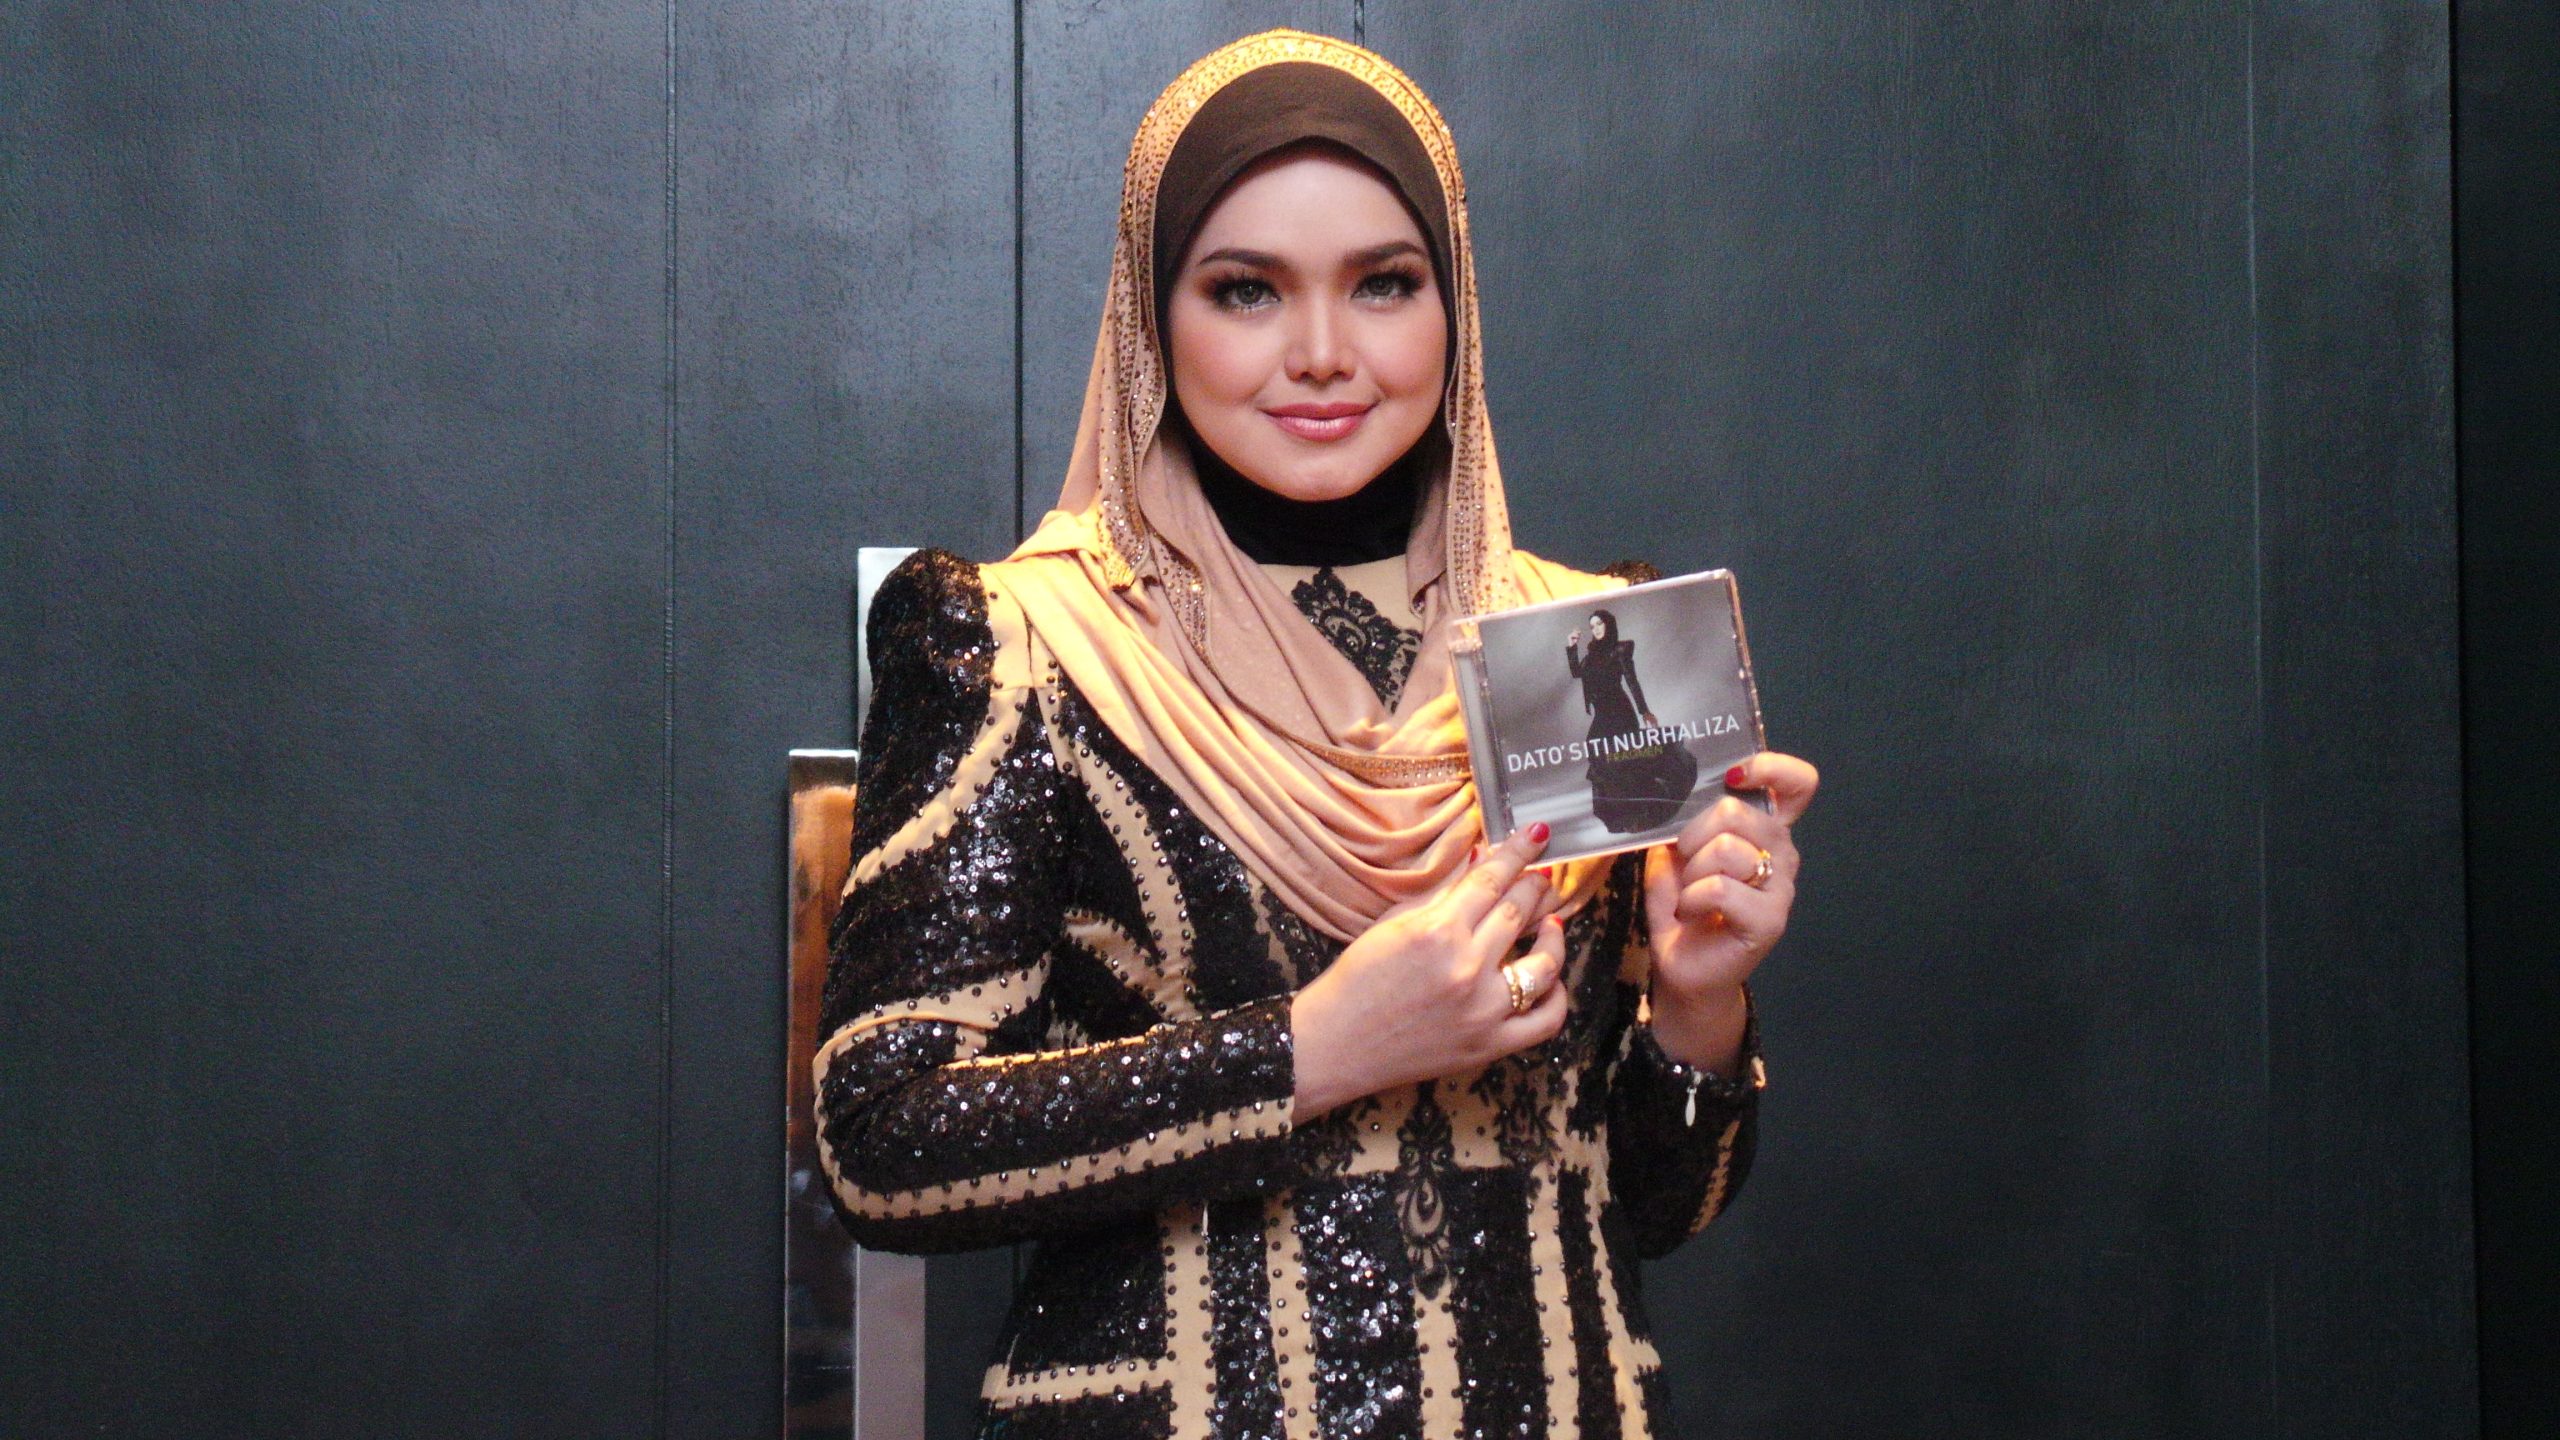 Mengelirukan Orang Lain – Siti Nurhaliza ‘Bising’ Nama Disalah Guna. Peminat Sila Berwaspada OK!